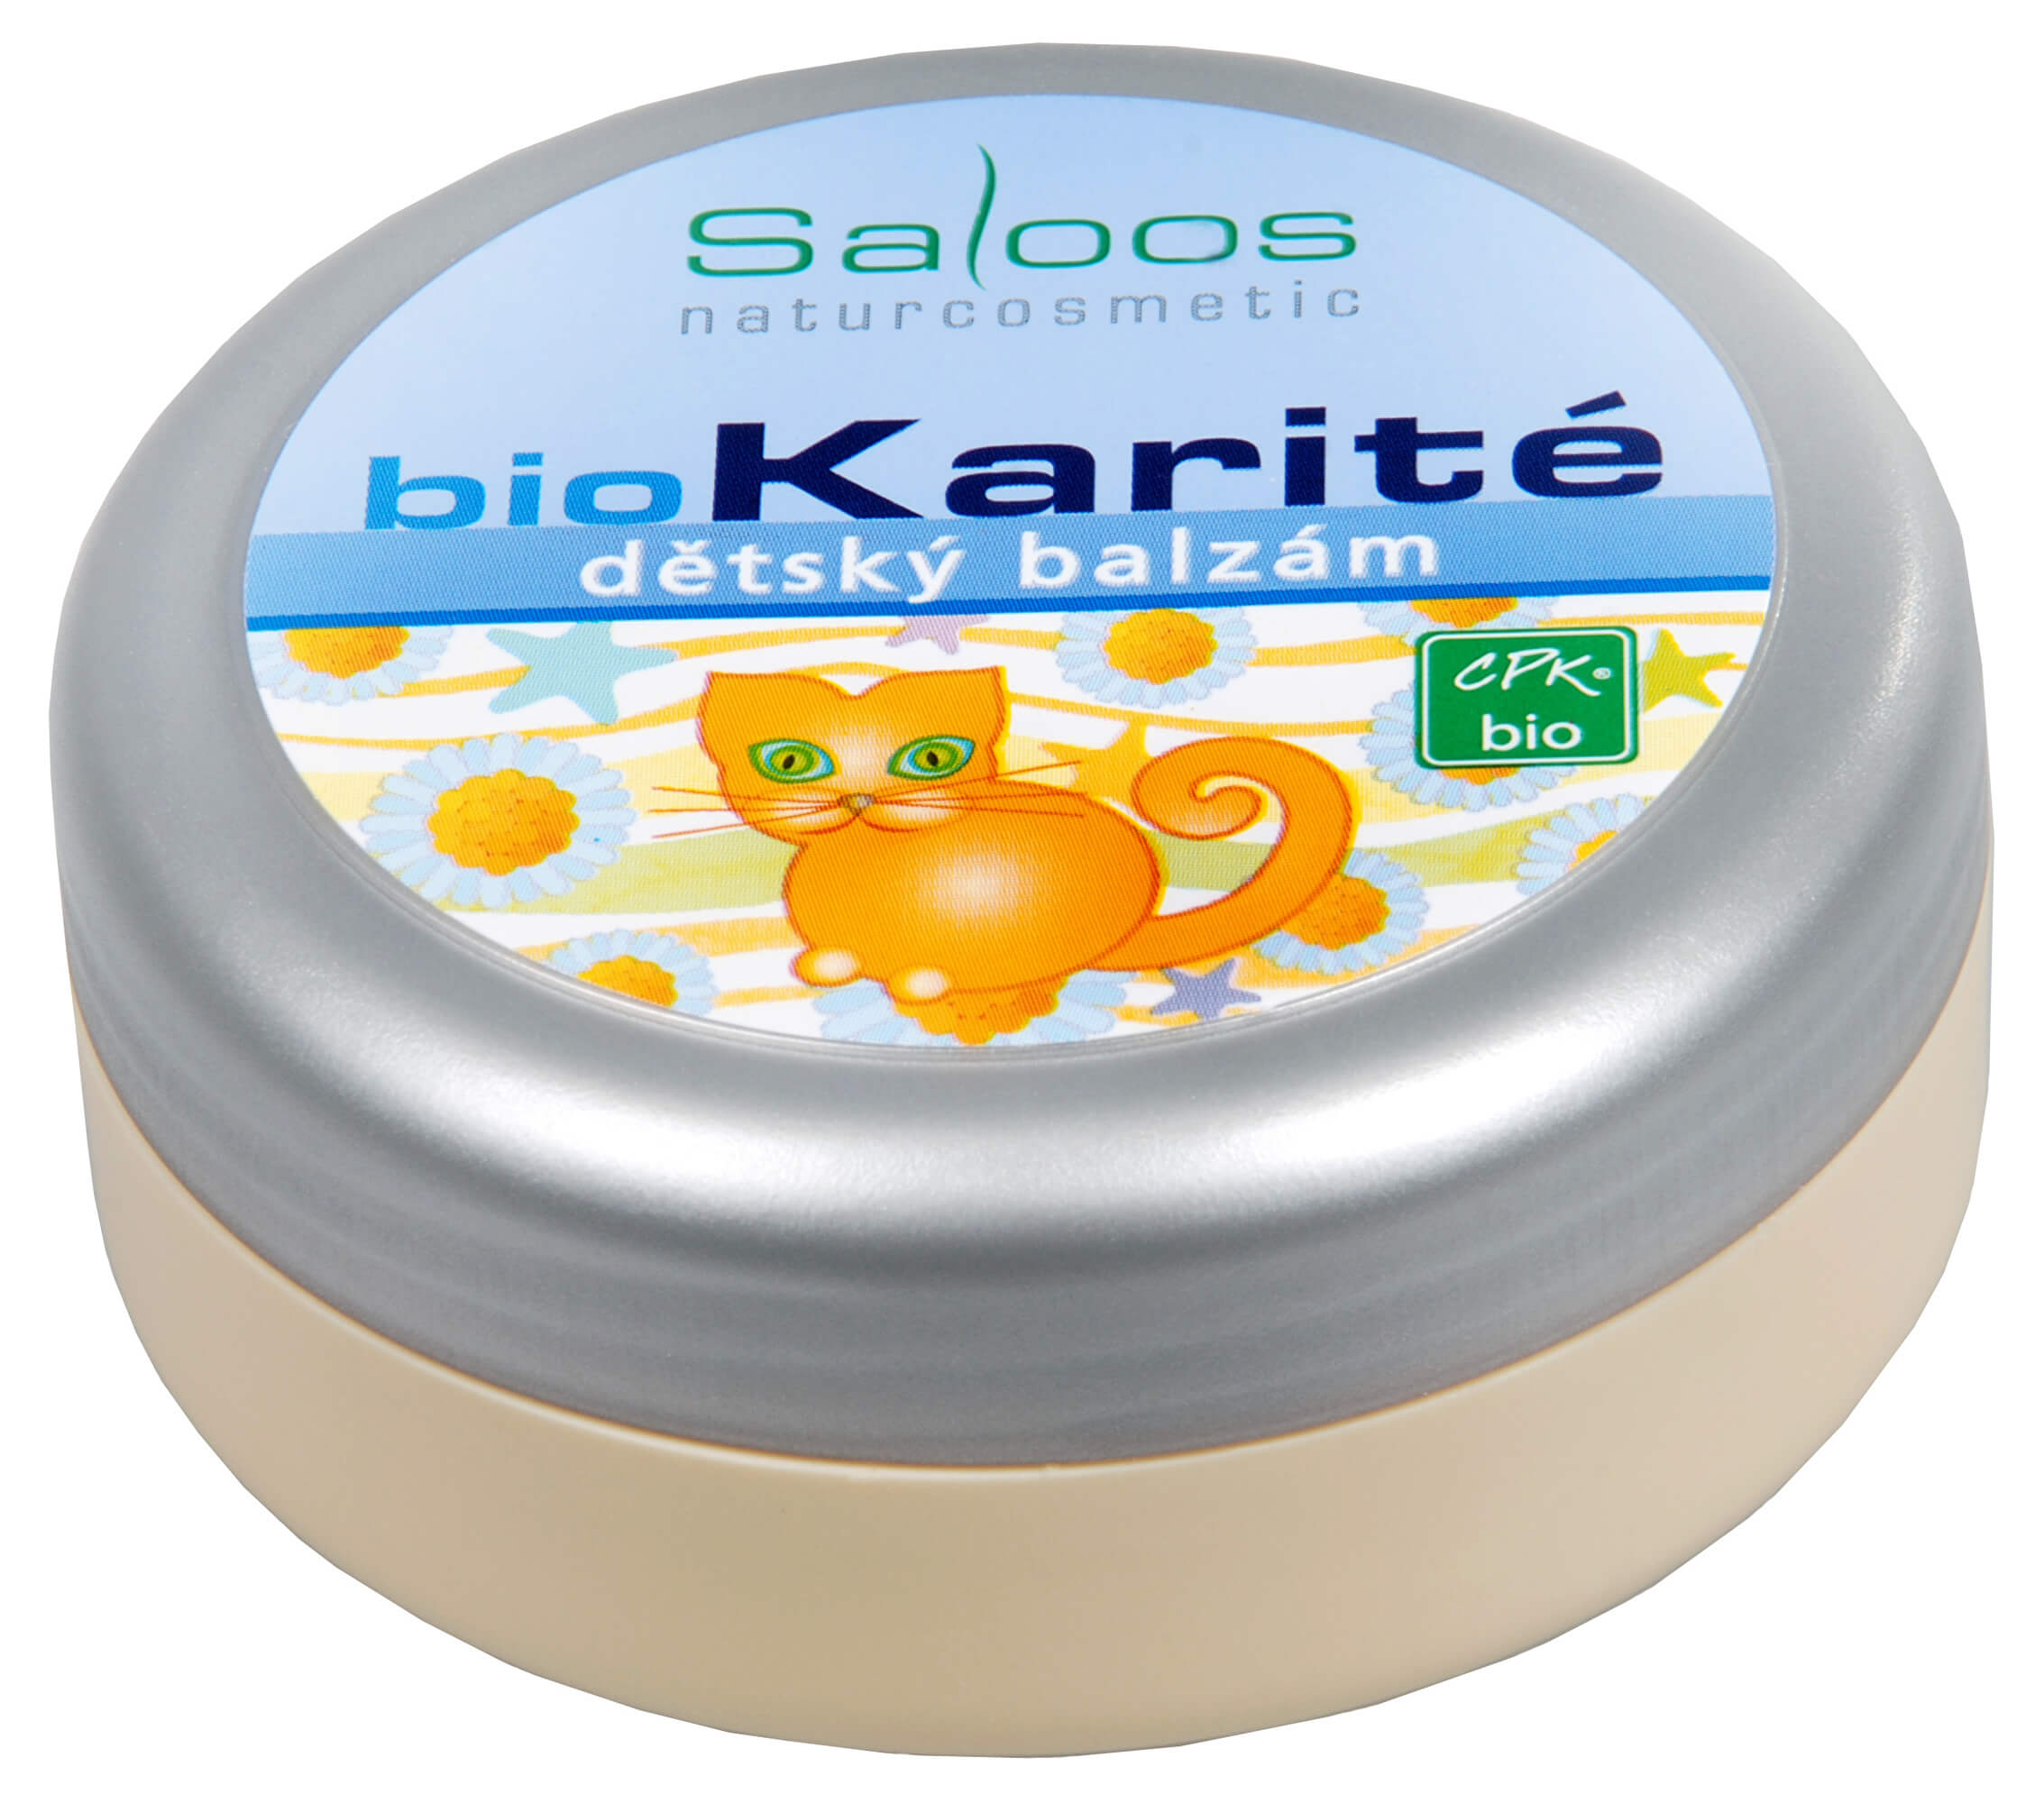 Zobrazit detail výrobku Saloos Bio Karité balzám - Dětský 50 ml